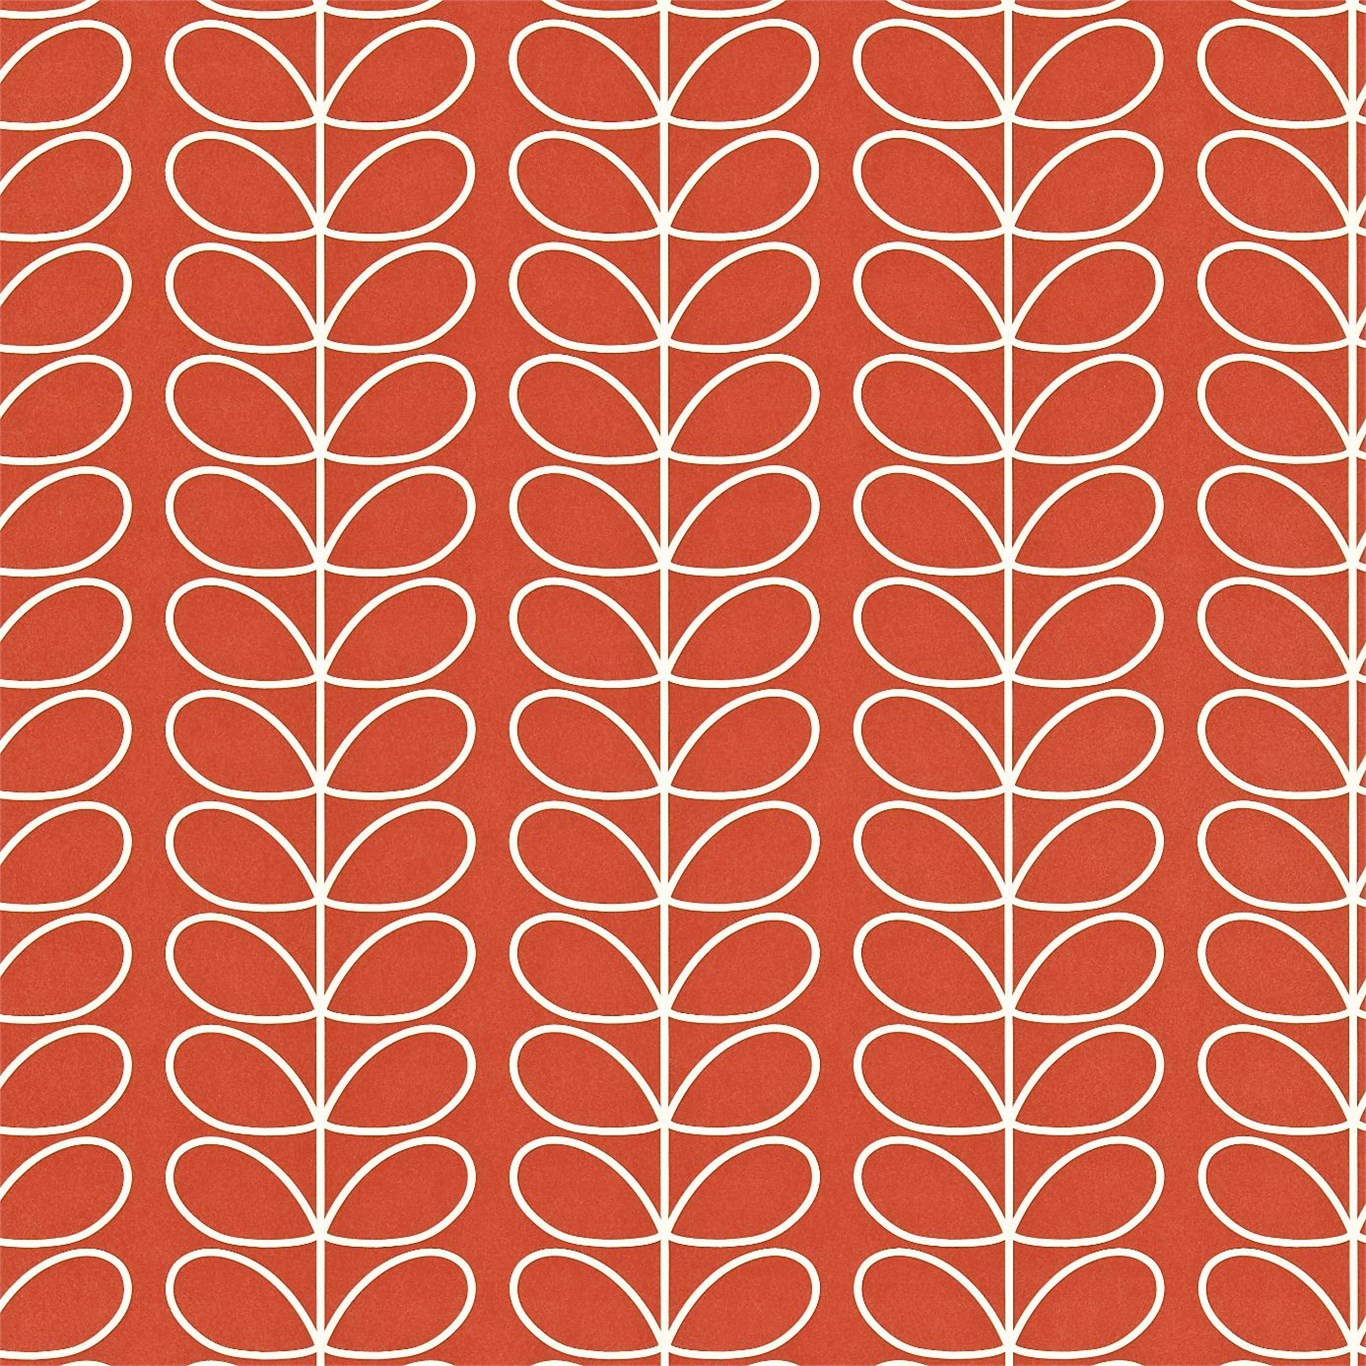 Linear Stem Poppy Wallpaper by HAR